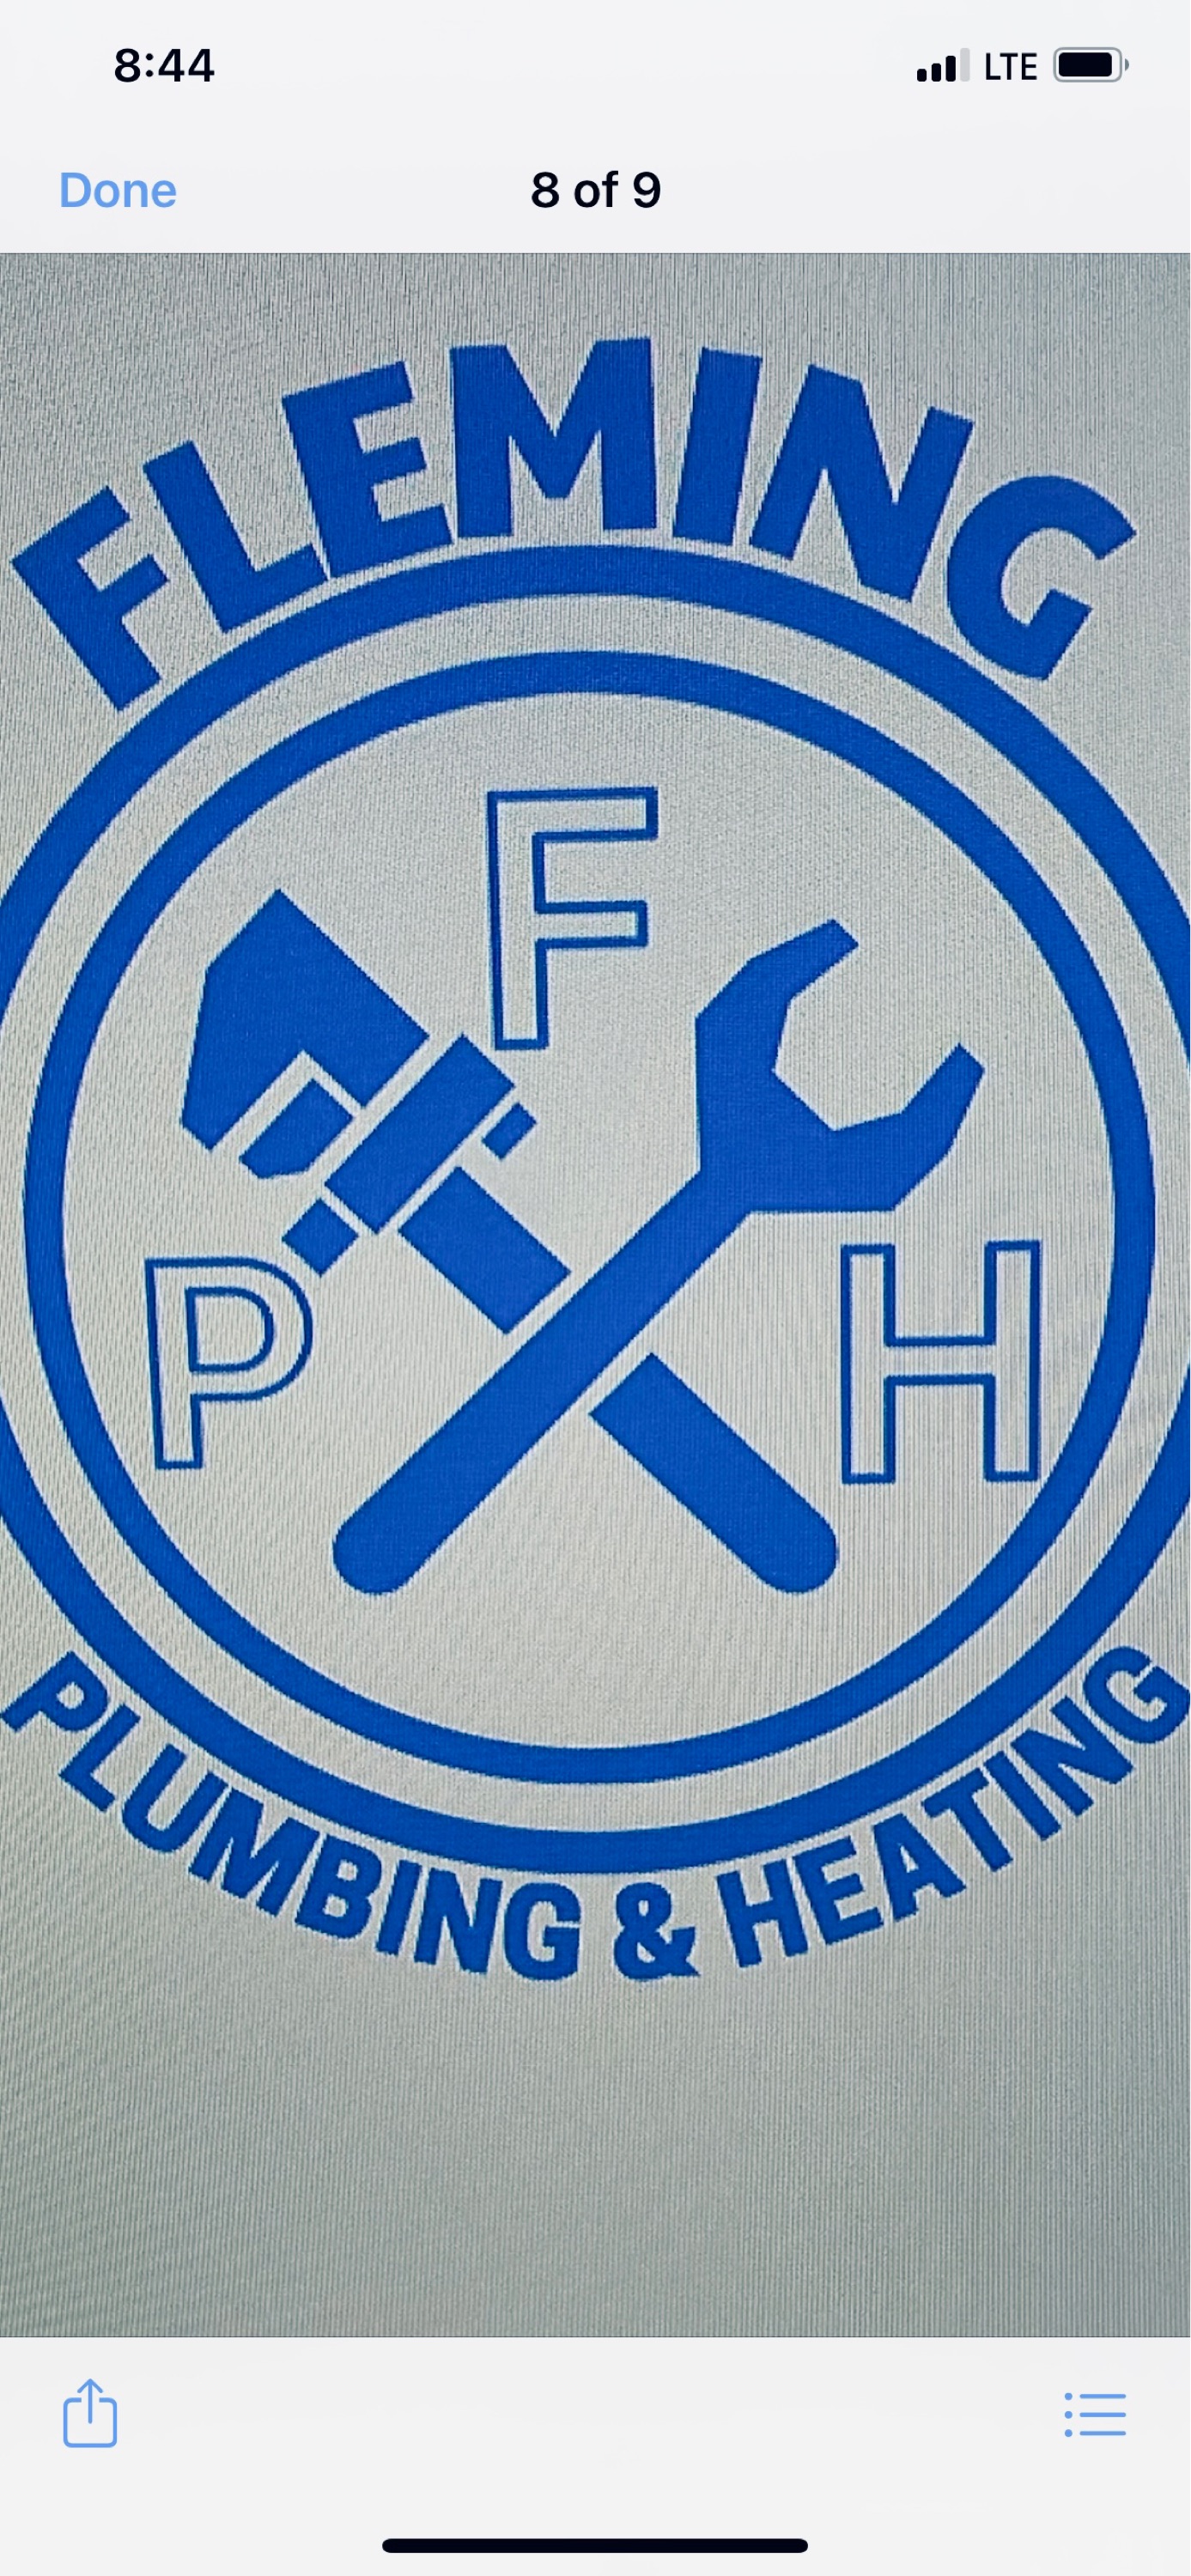 Fleming Plumbing & Heating Logo